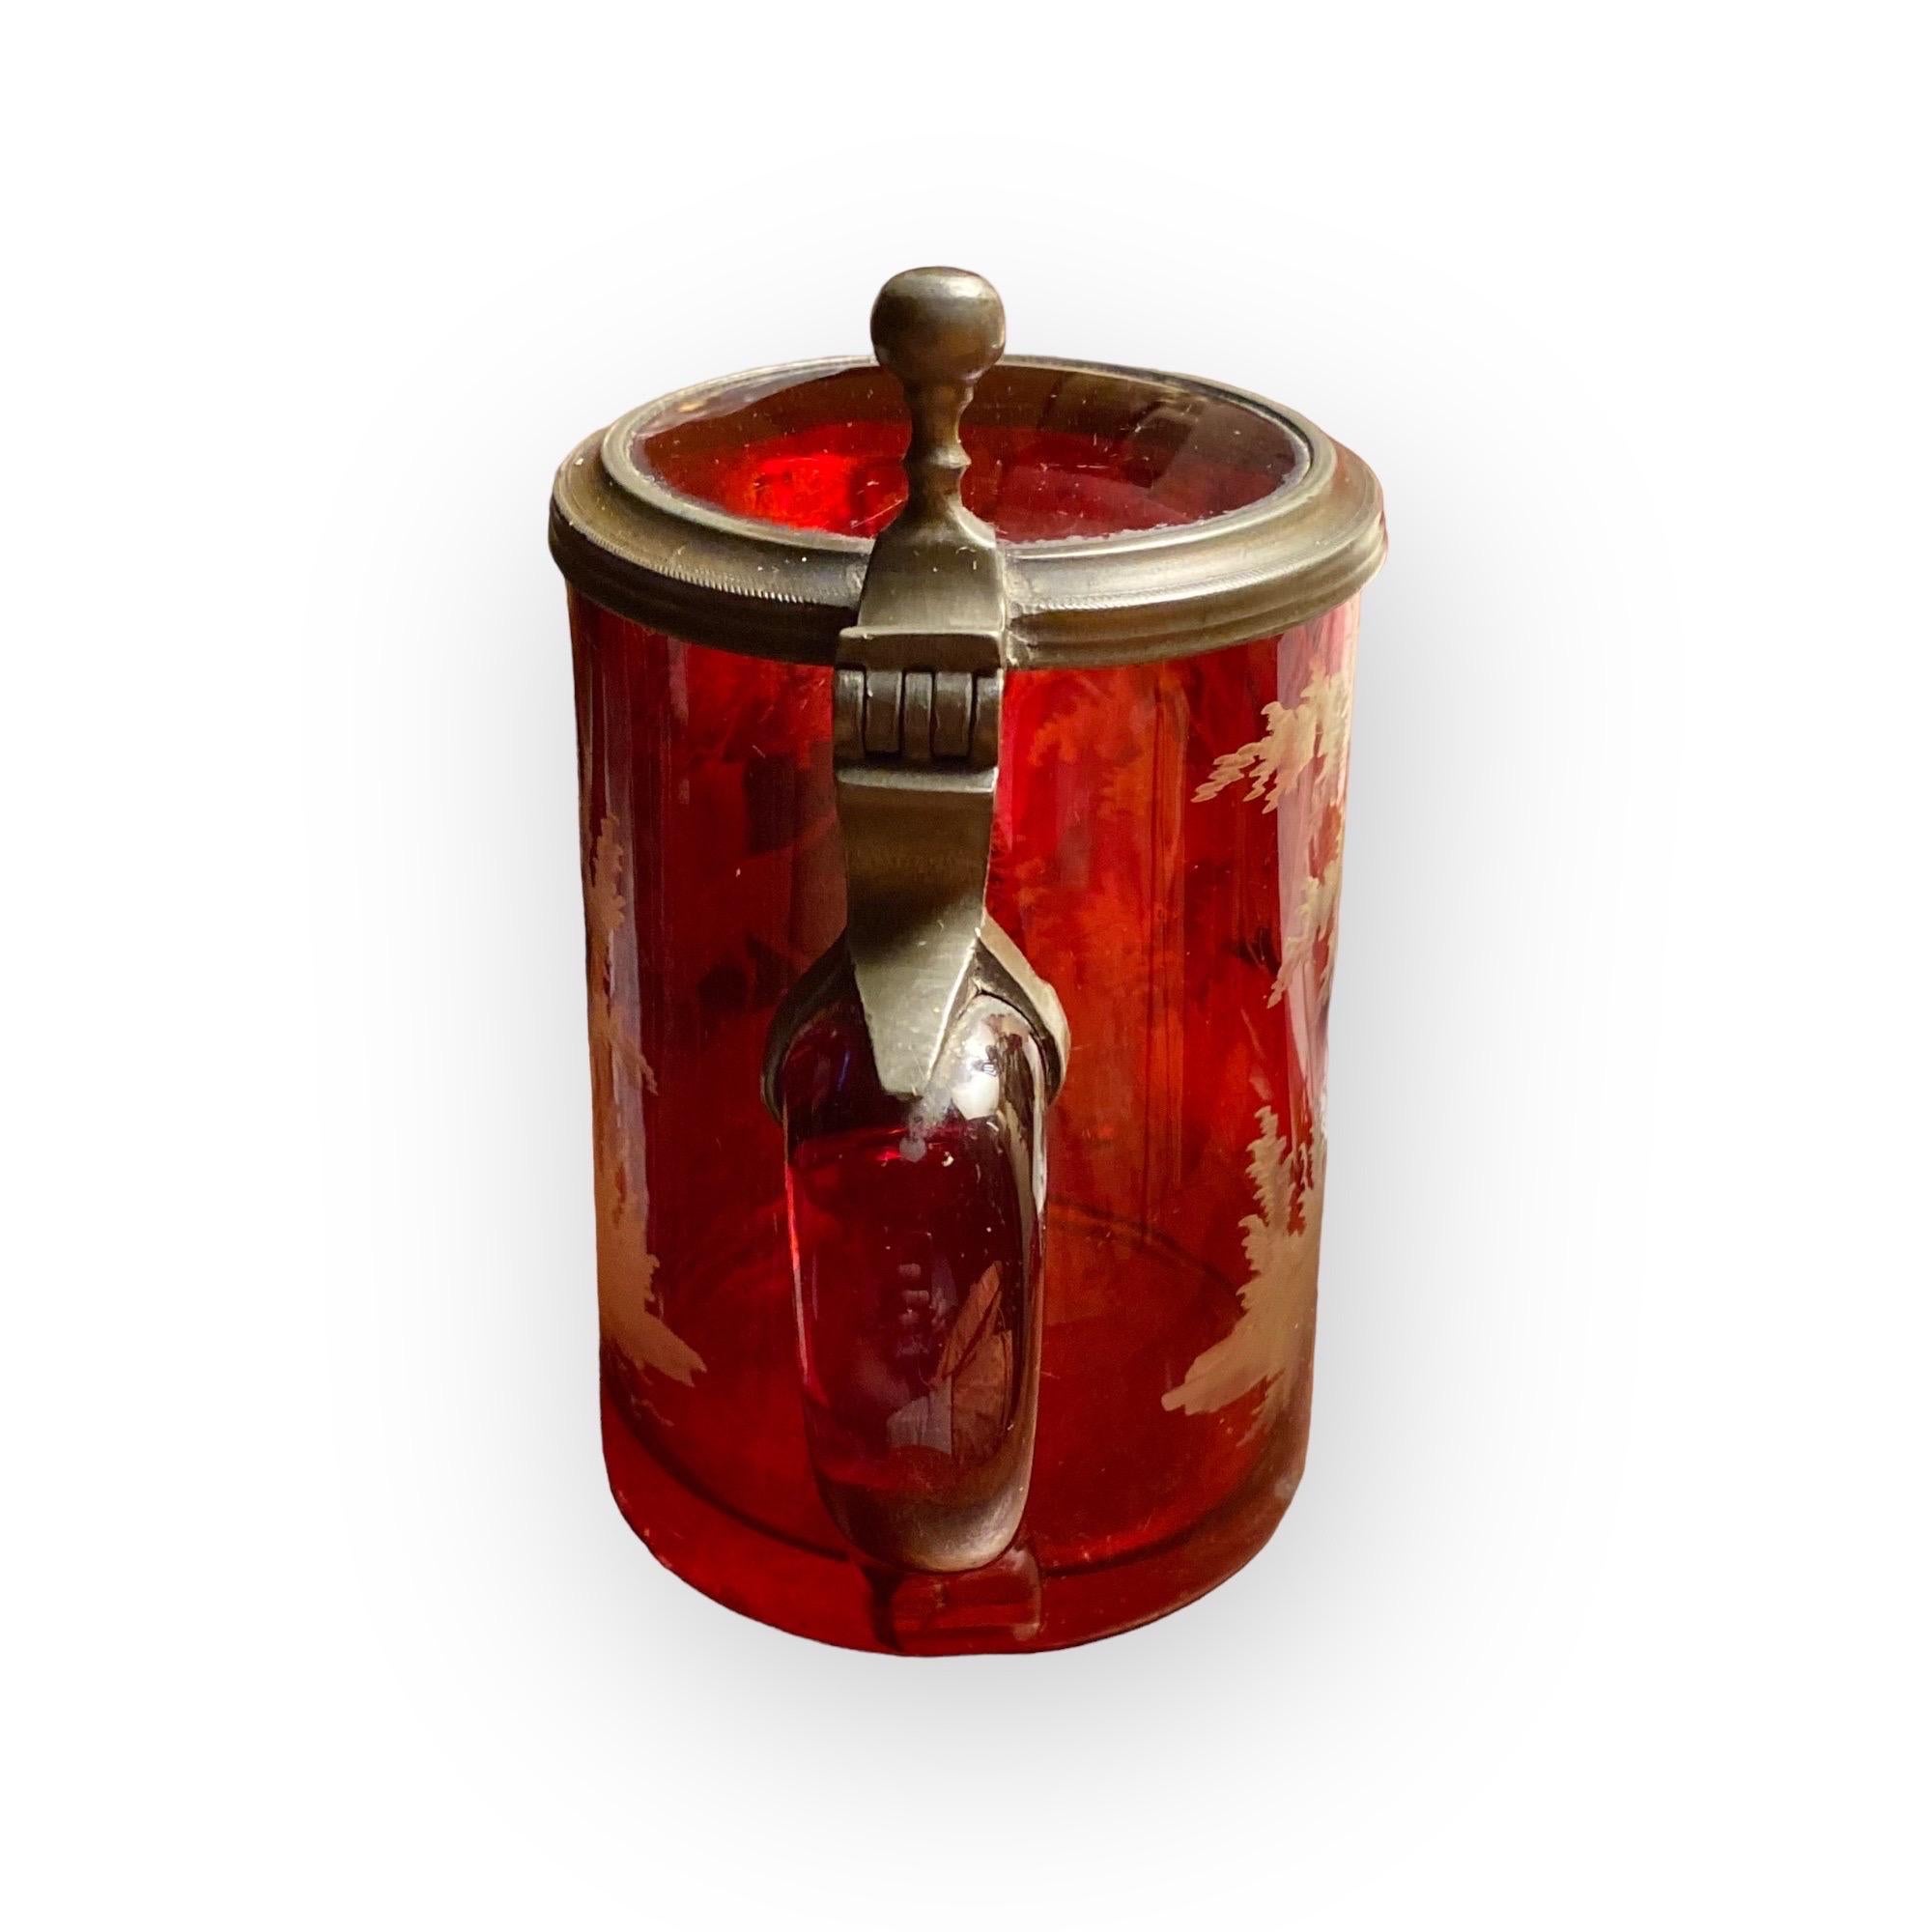 Un superbe stein à bière antique en verre rouge flash gravé de Bohème. Il date du milieu du 19e siècle. Cet objet a été fabriqué à la main à partir de verre.
Eau-forte et gravure représentant une scène boisée et un chien de chasse. Sa principale